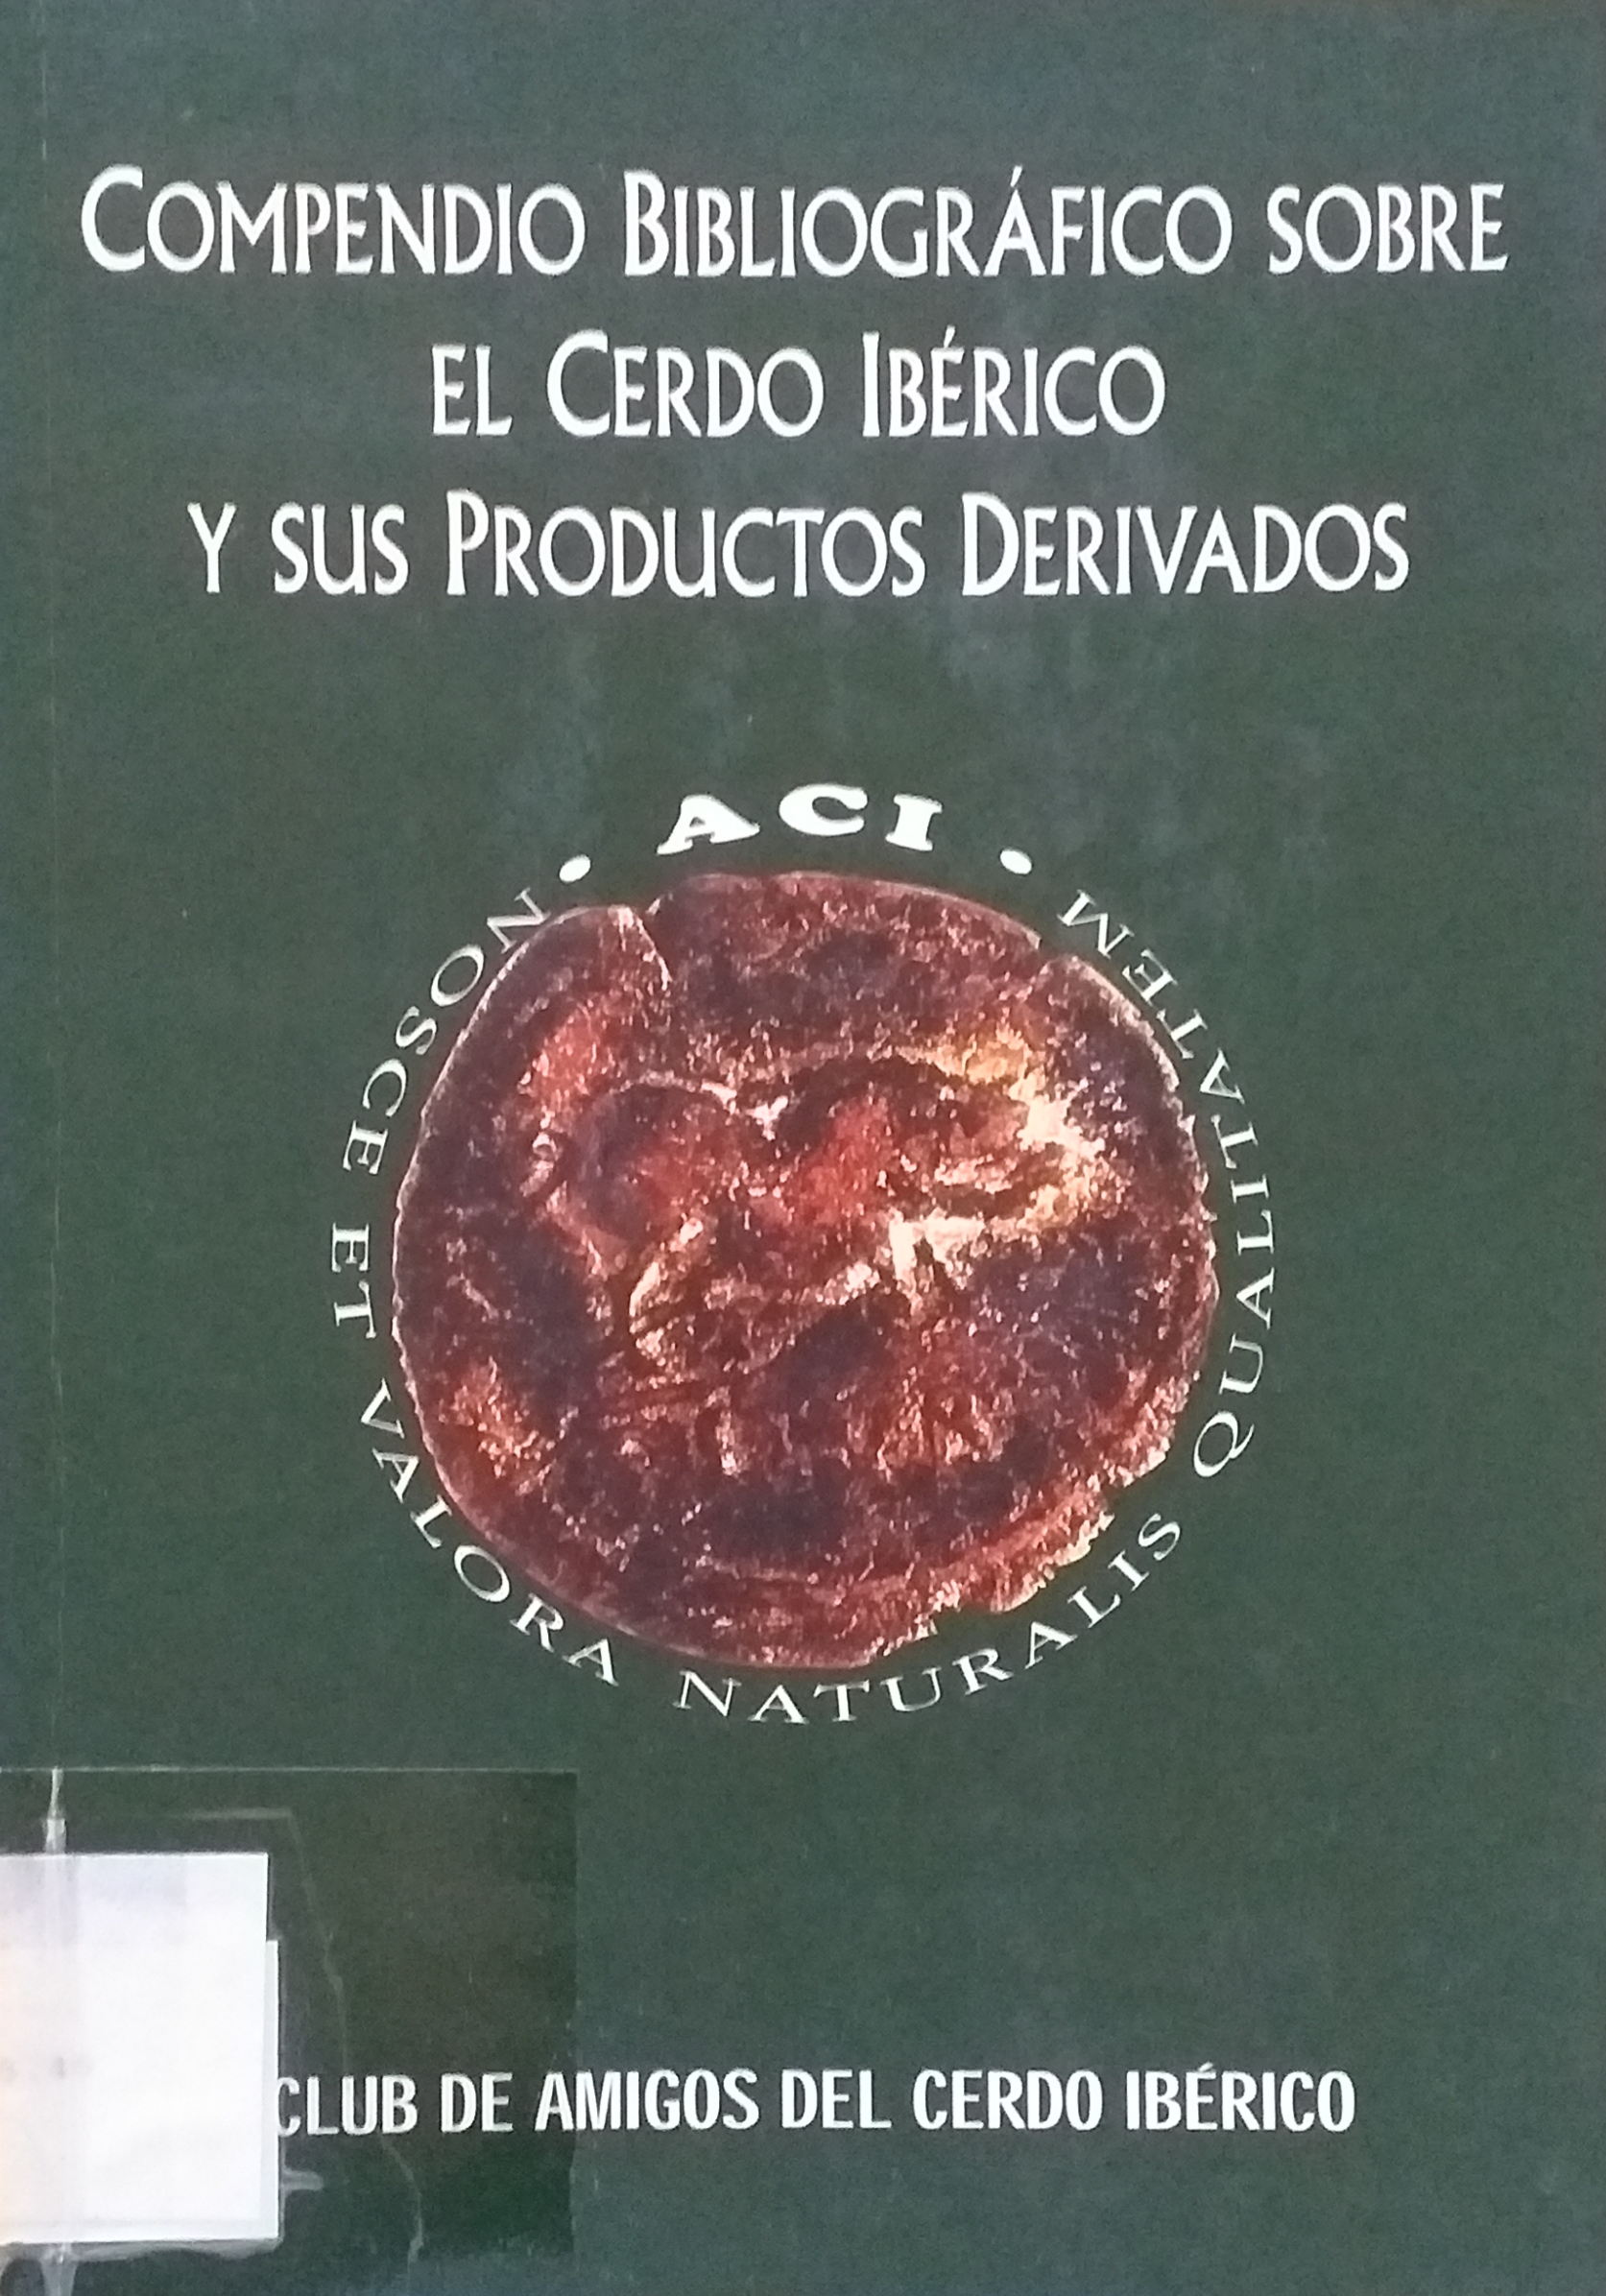 Imagen de portada del libro Compendio bibliográfico sobre el cerdo ibérico y sus productos derivados